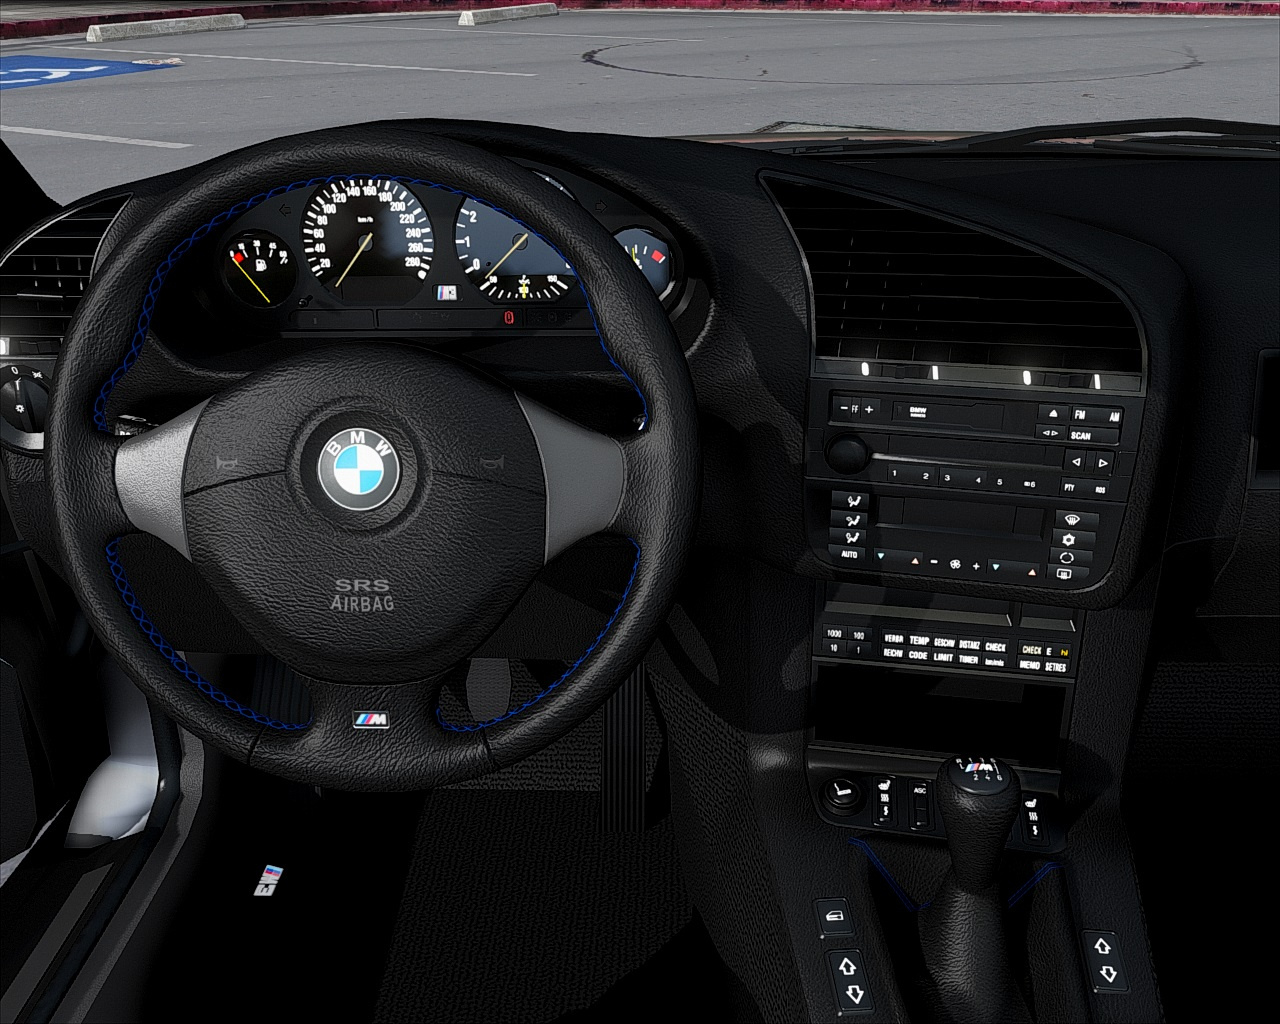 BMW M3 (E36) mit Camaro-V8: Tuning